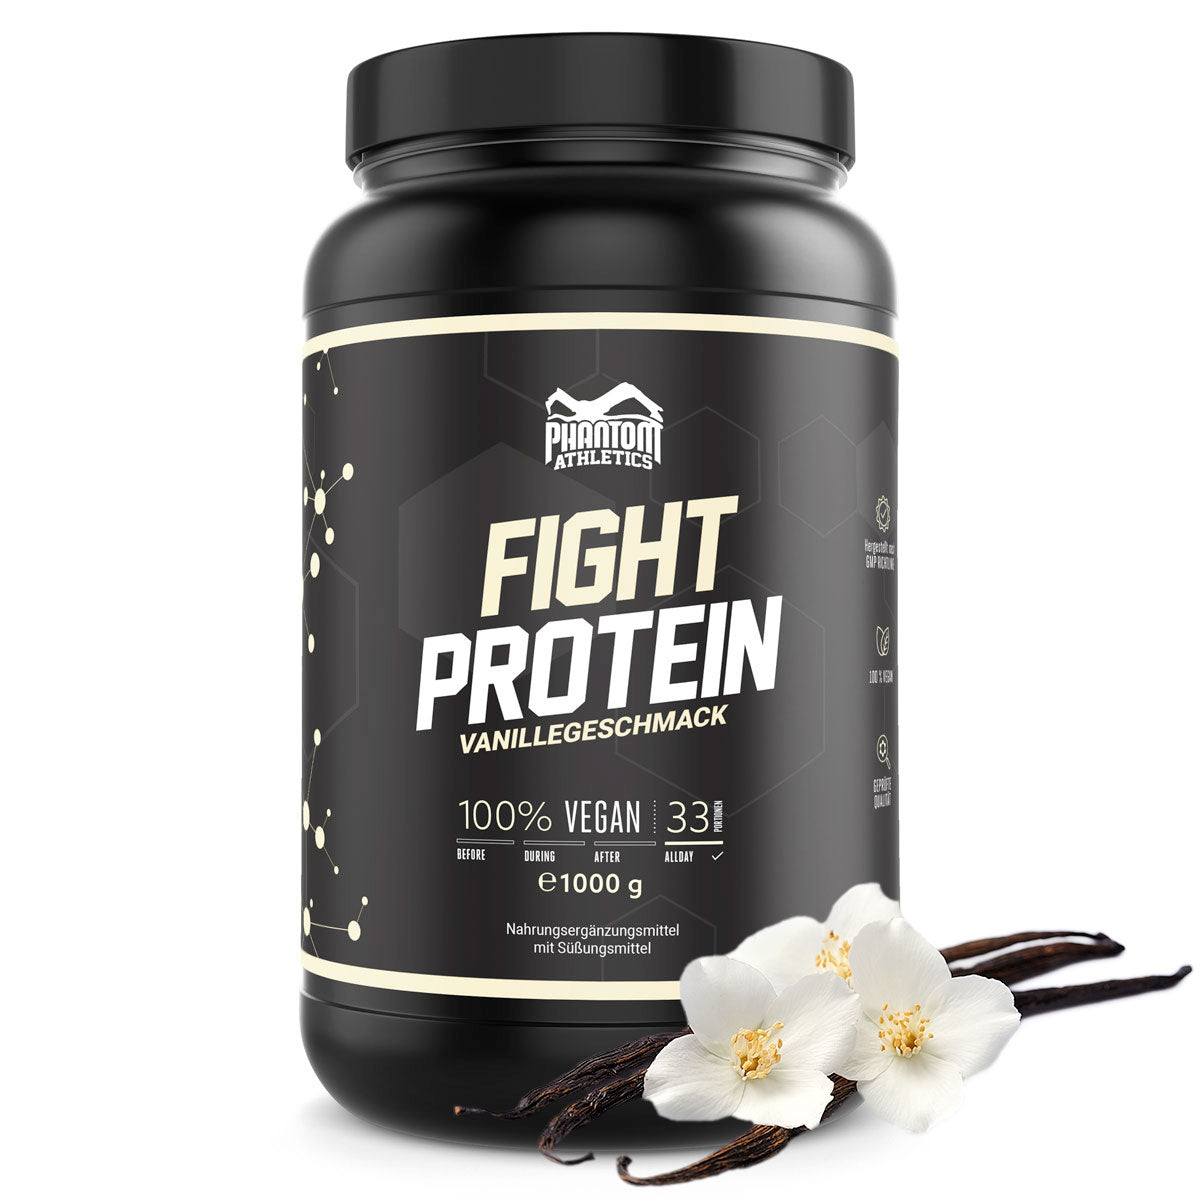 Phantom FIGHT Protein für Kampfsportler mit Vanille Geschmack.